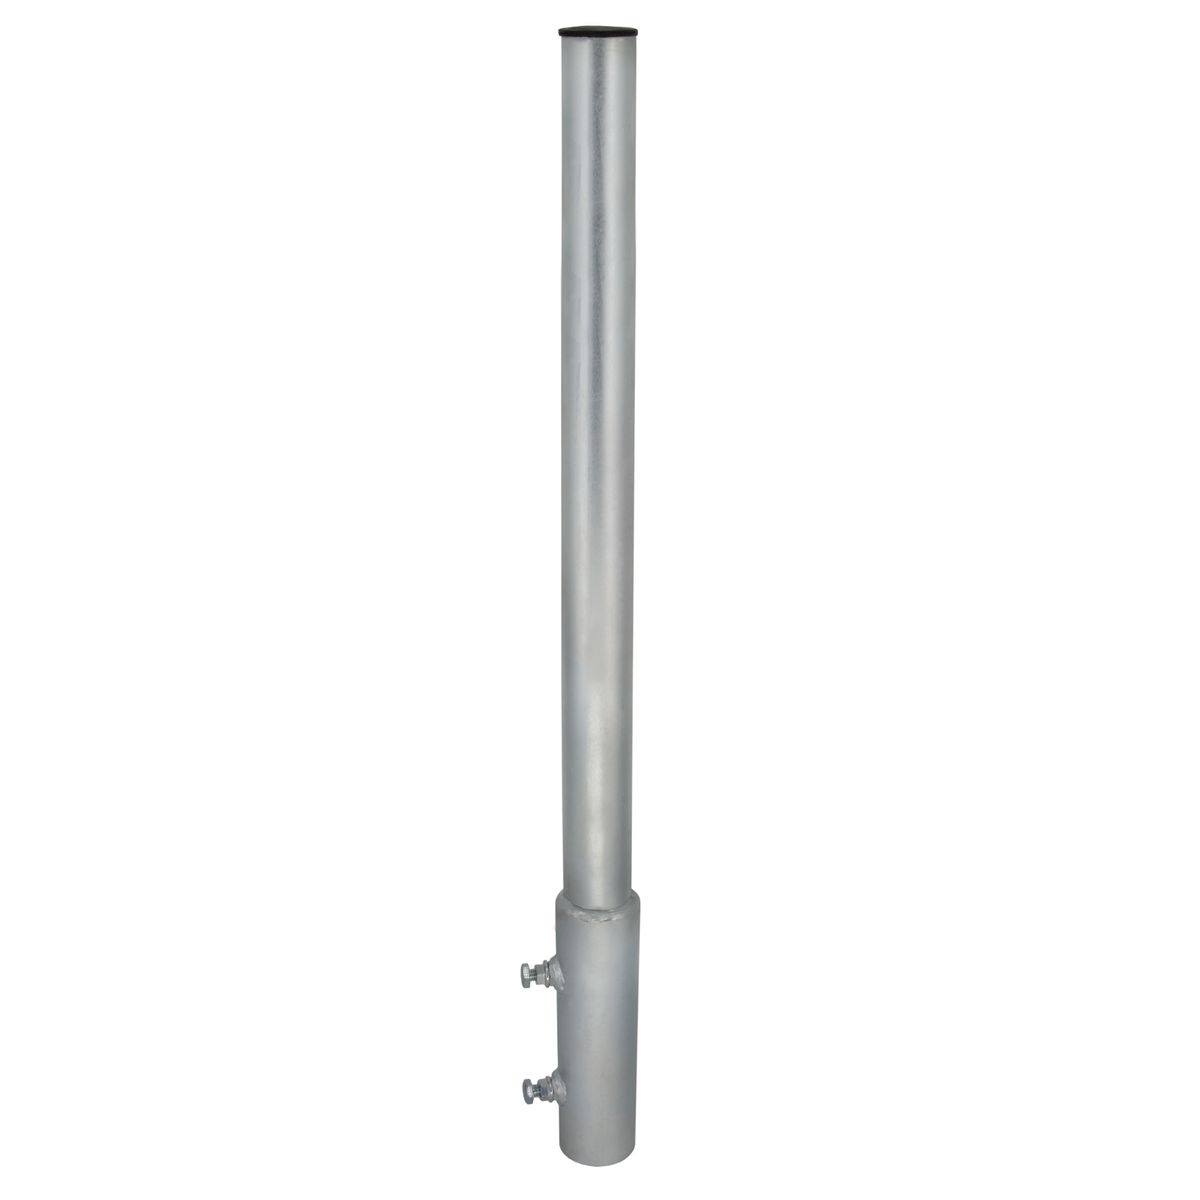 Mastkappe Universal von 40-60 mm für SAT Mast Antennenmast Deckel Mastrohre 